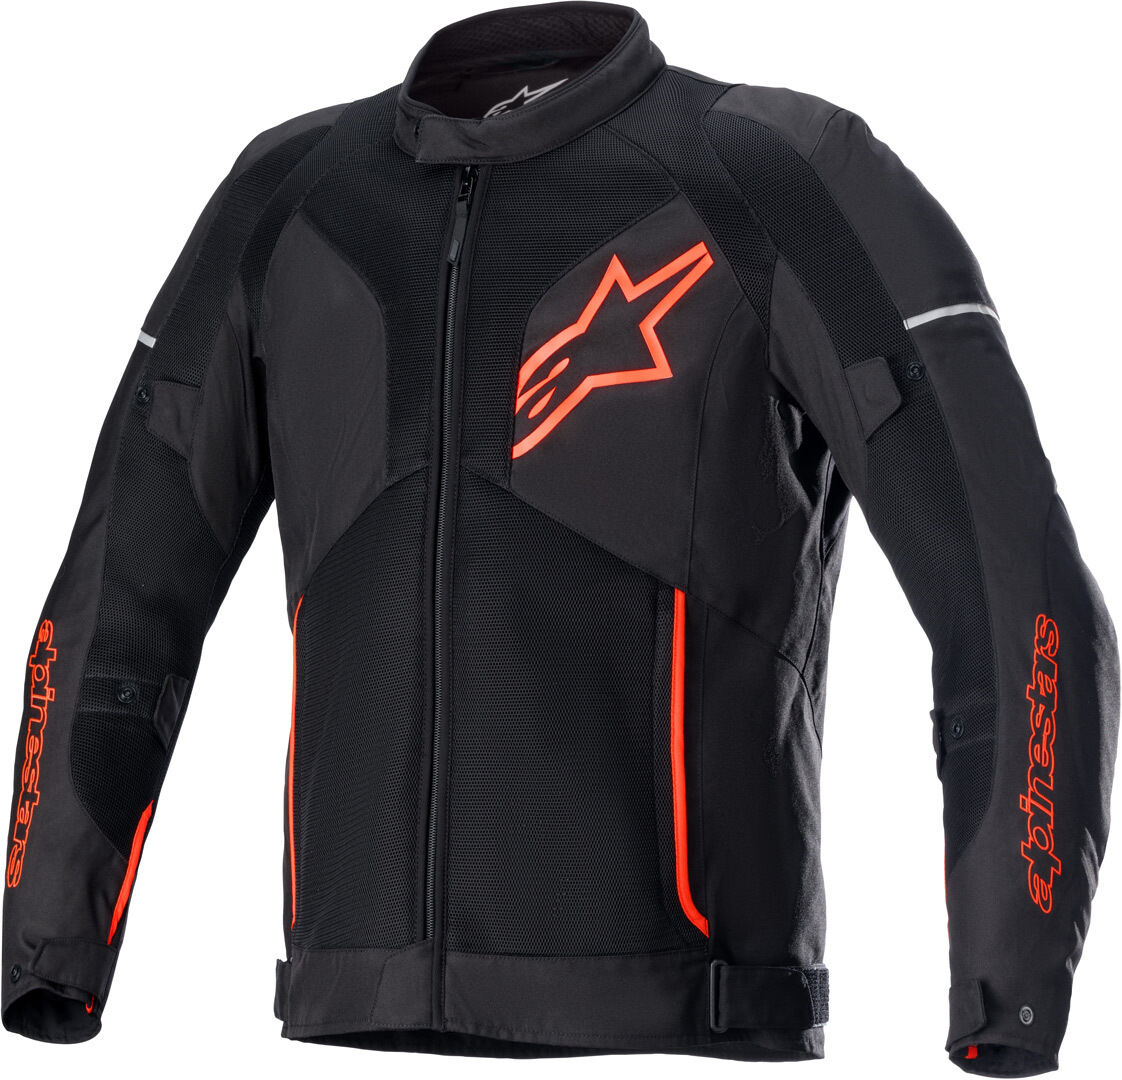 Alpinestars Viper V3 Air Chaqueta textil para motocicleta - Negro Rojo (S)